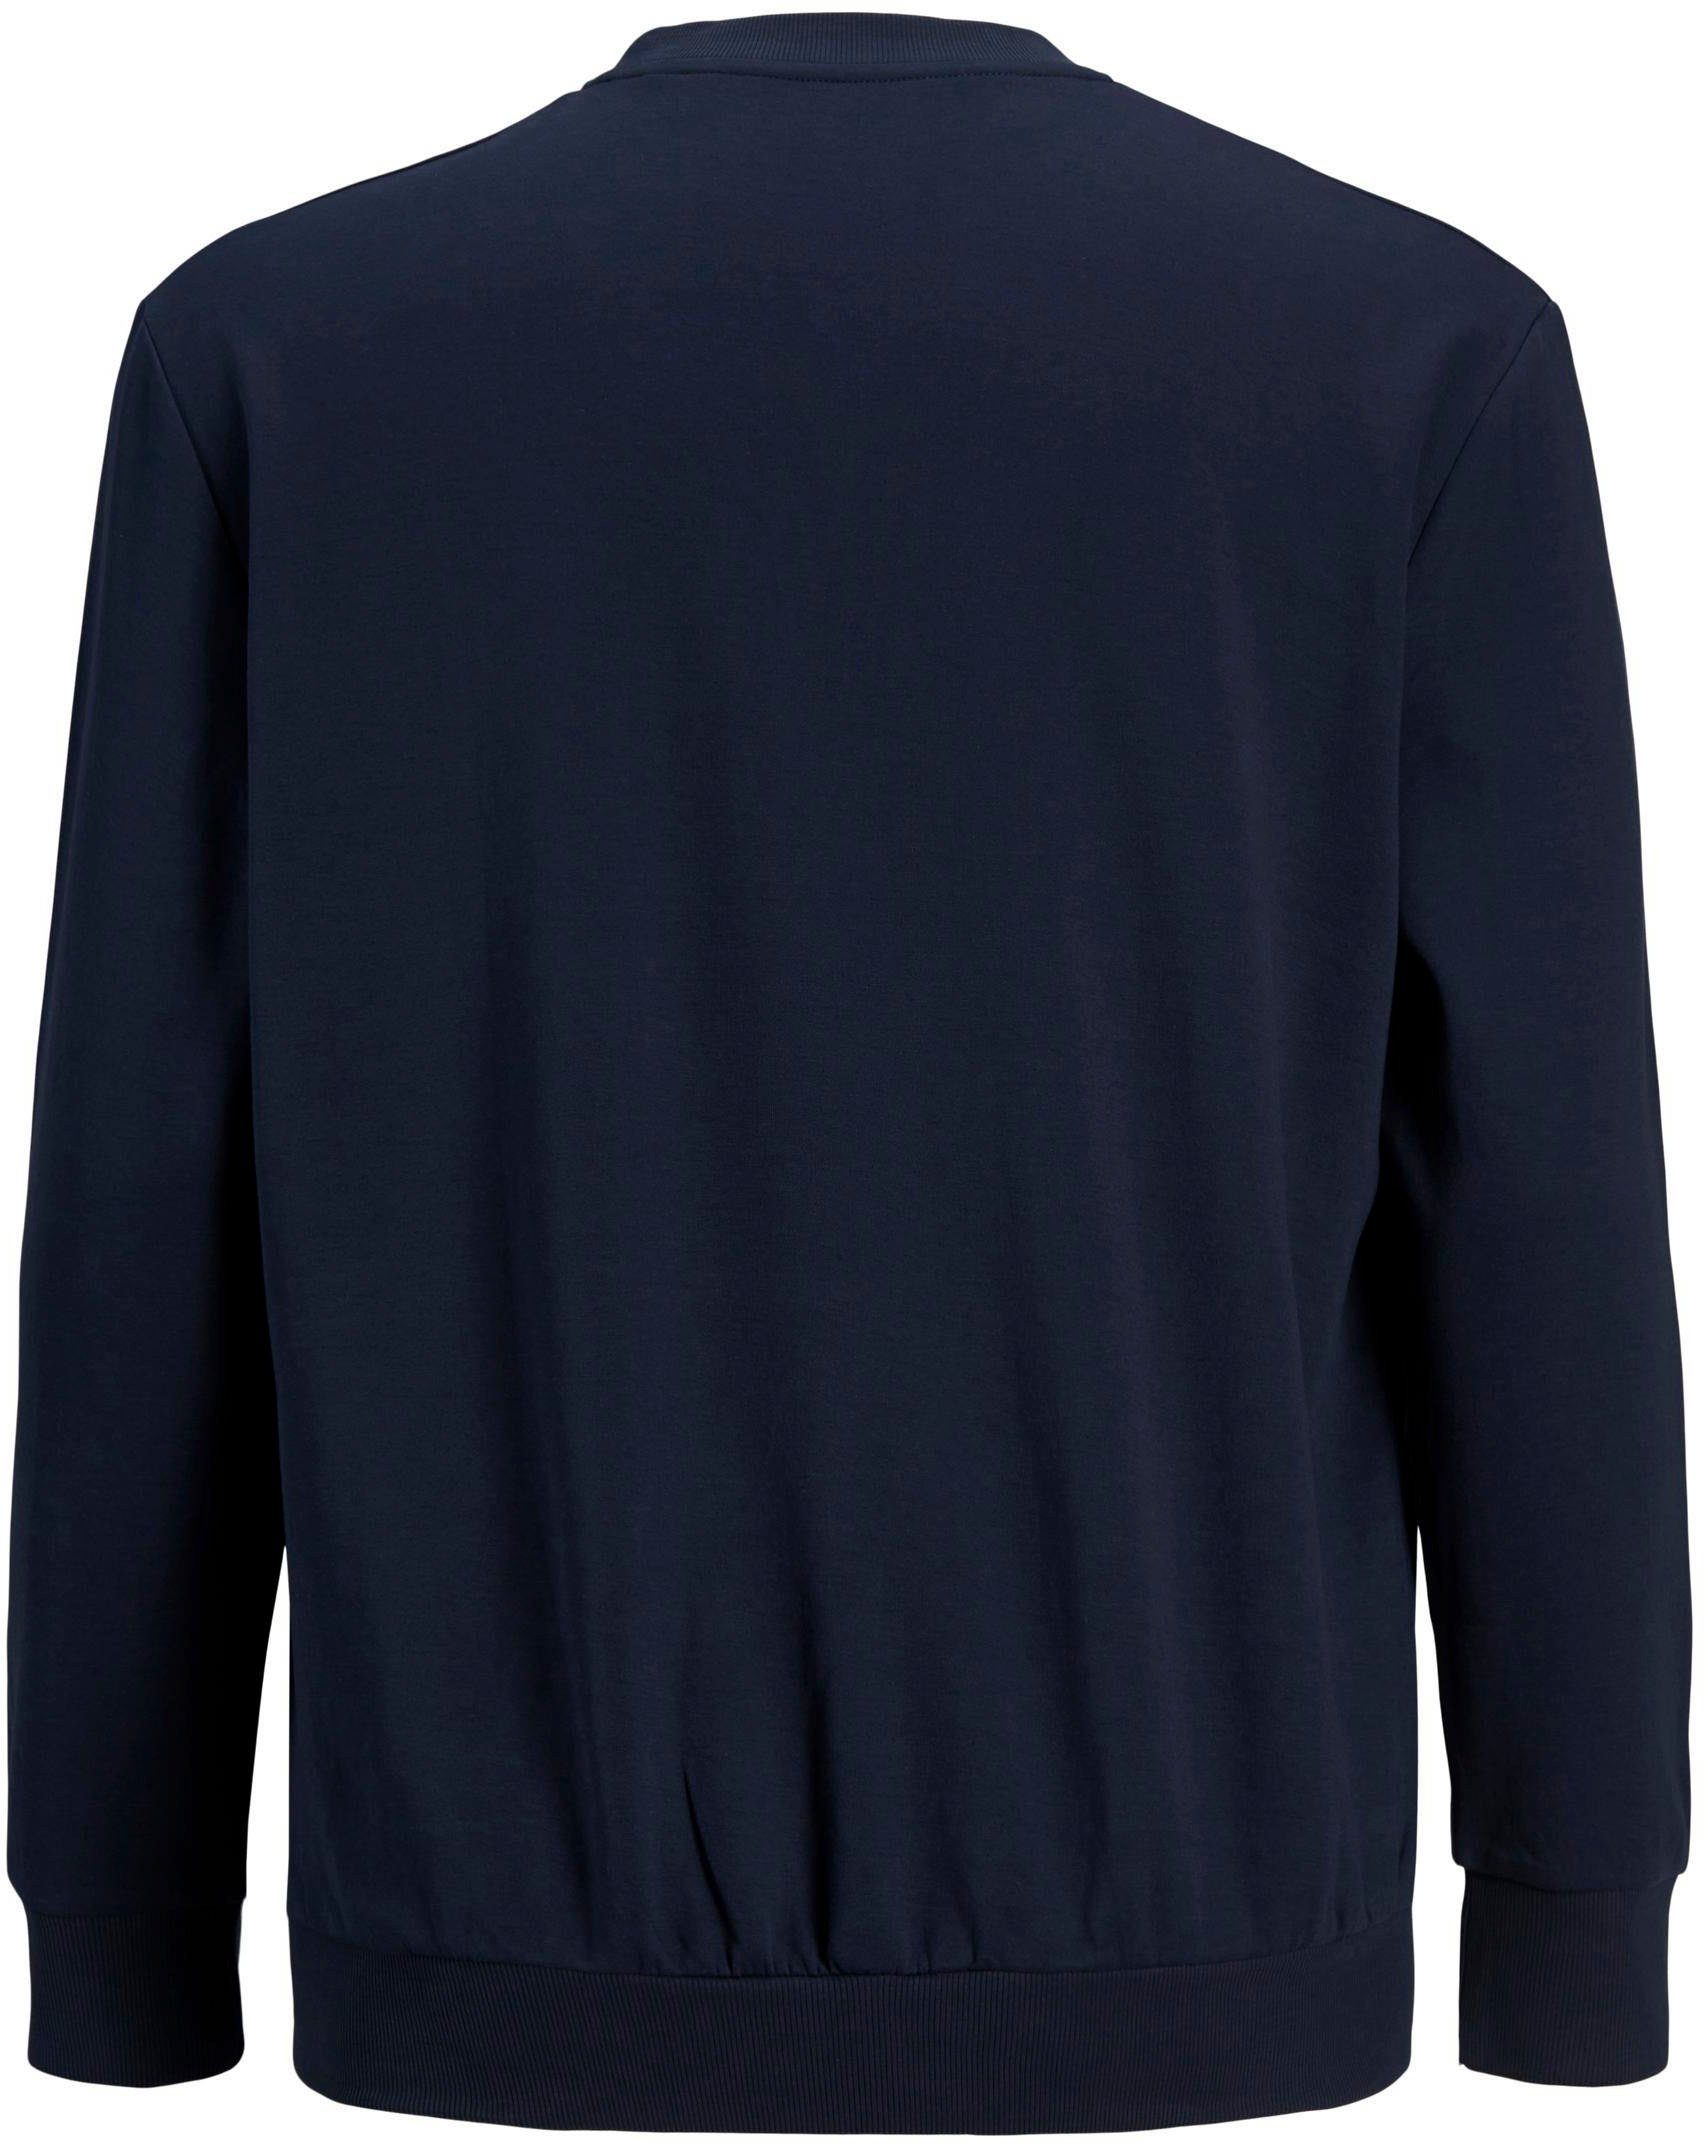 PlusSize SWEAT & BASIC NECK CREW navy Sweatshirt Jones (Packung) Jack